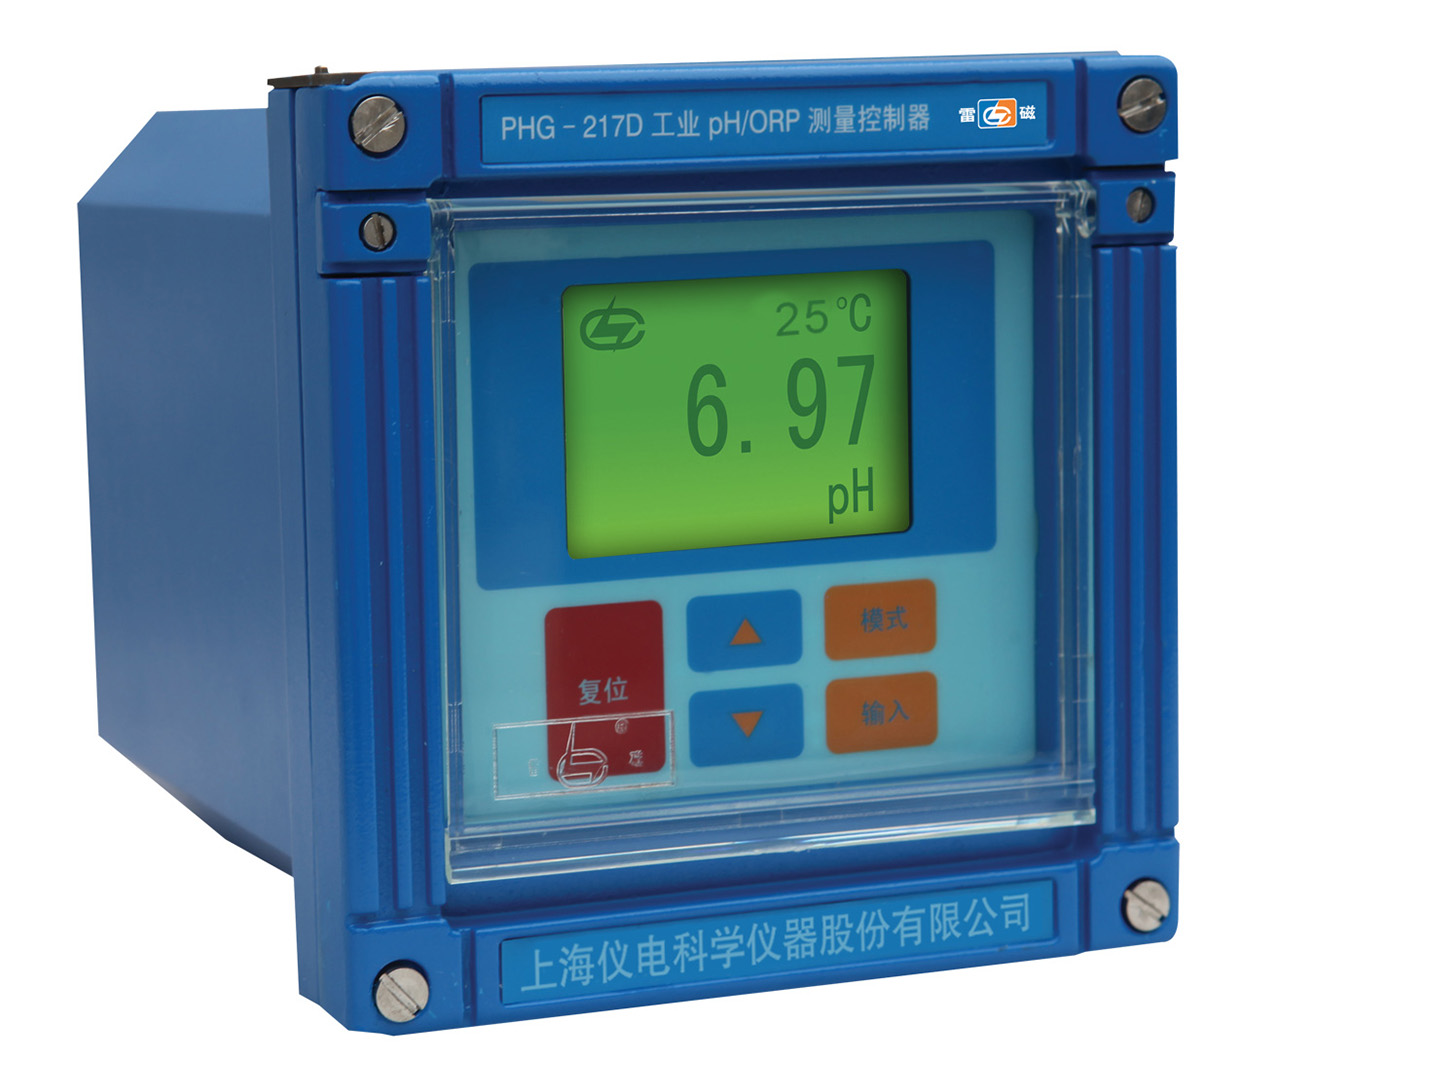 雷磁工業pH/ORP測量控制器PHG-217C/ PHG-217D型